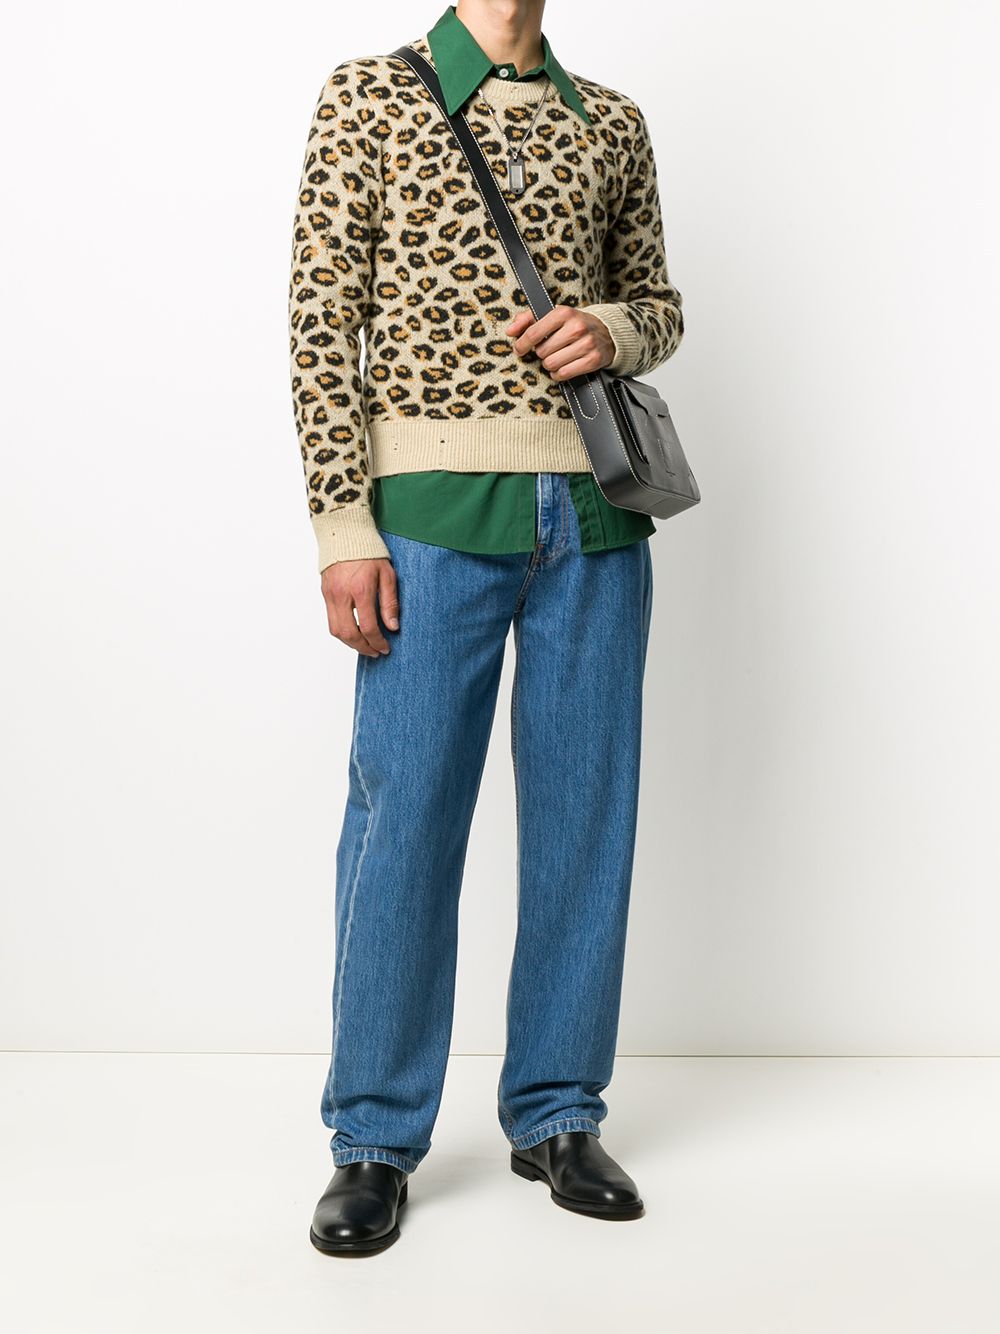 фото Gucci жаккардовый джемпер с леопардовым принтом